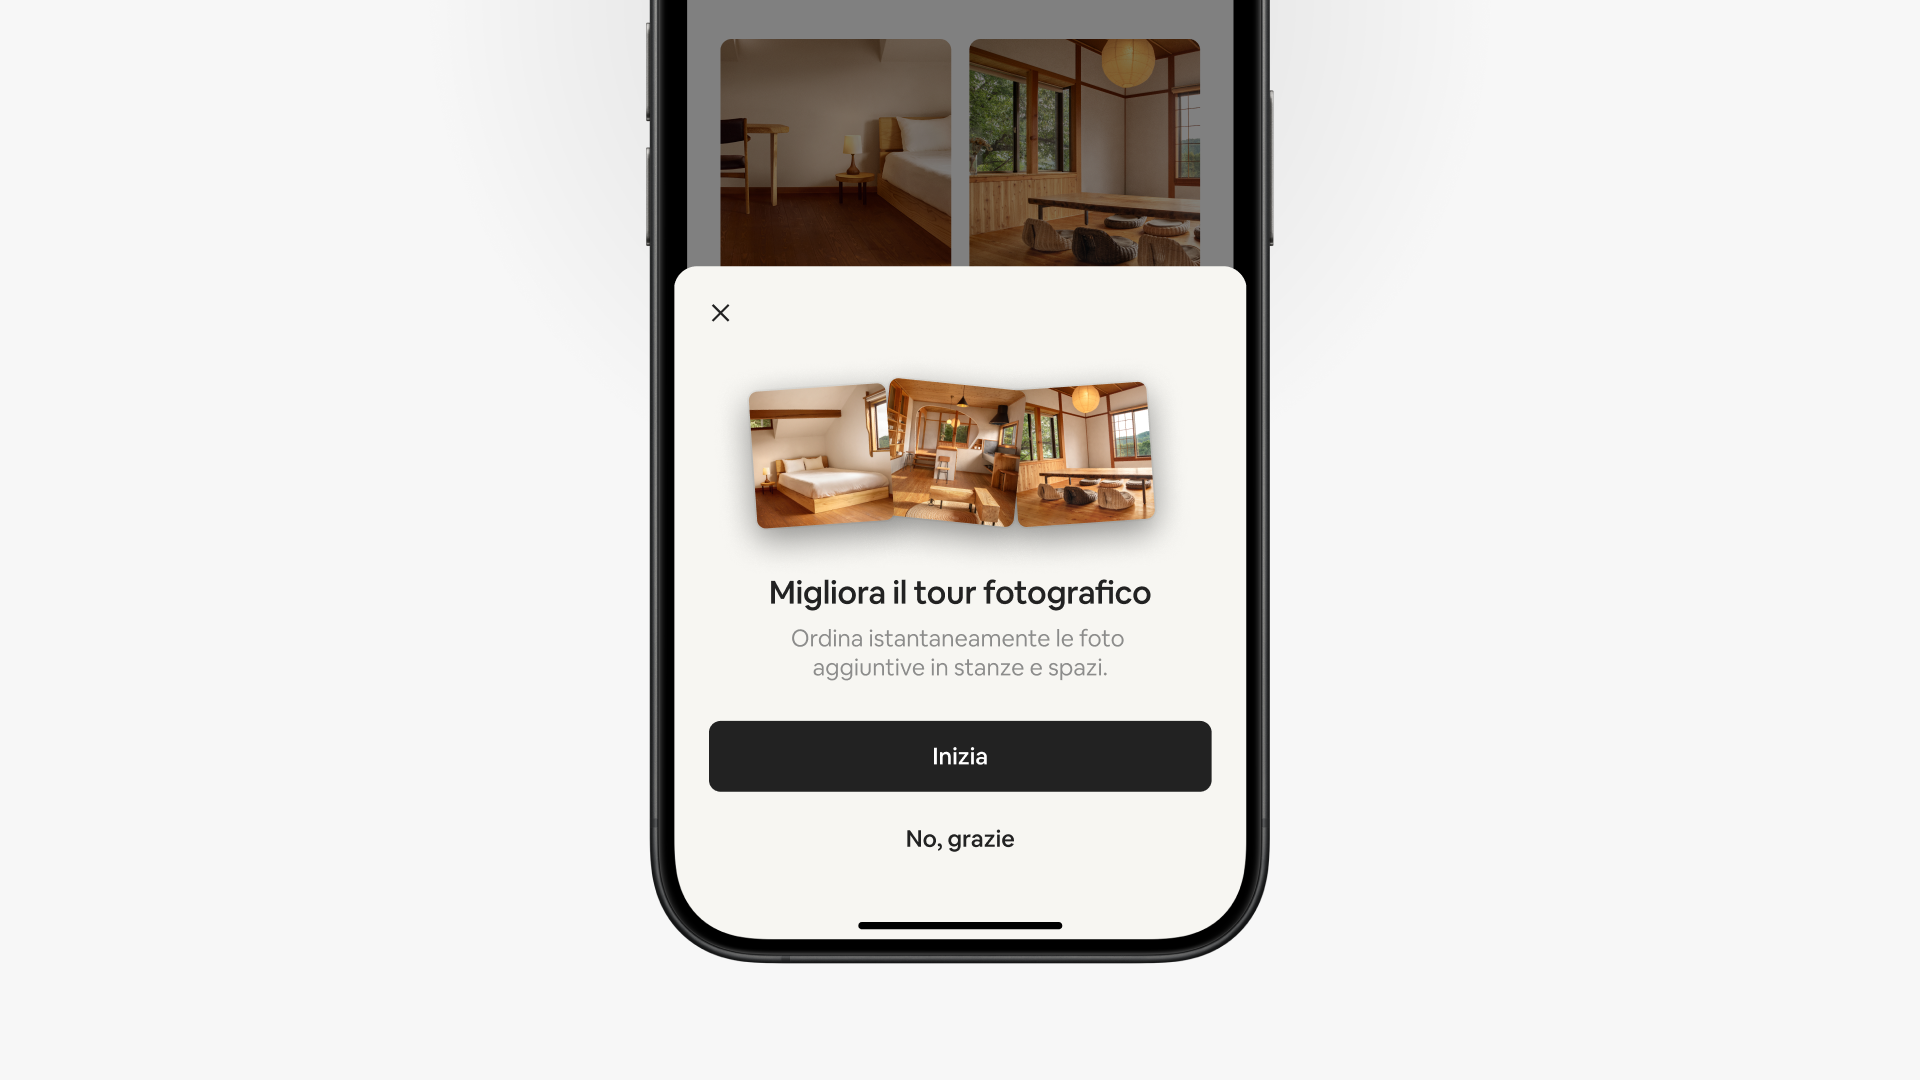 Una schermata pop-up nell'app di Airbnb suggerisce "Migliora il tour fotografico". Sotto, due pulsanti: "Inizia" e "No, grazie".